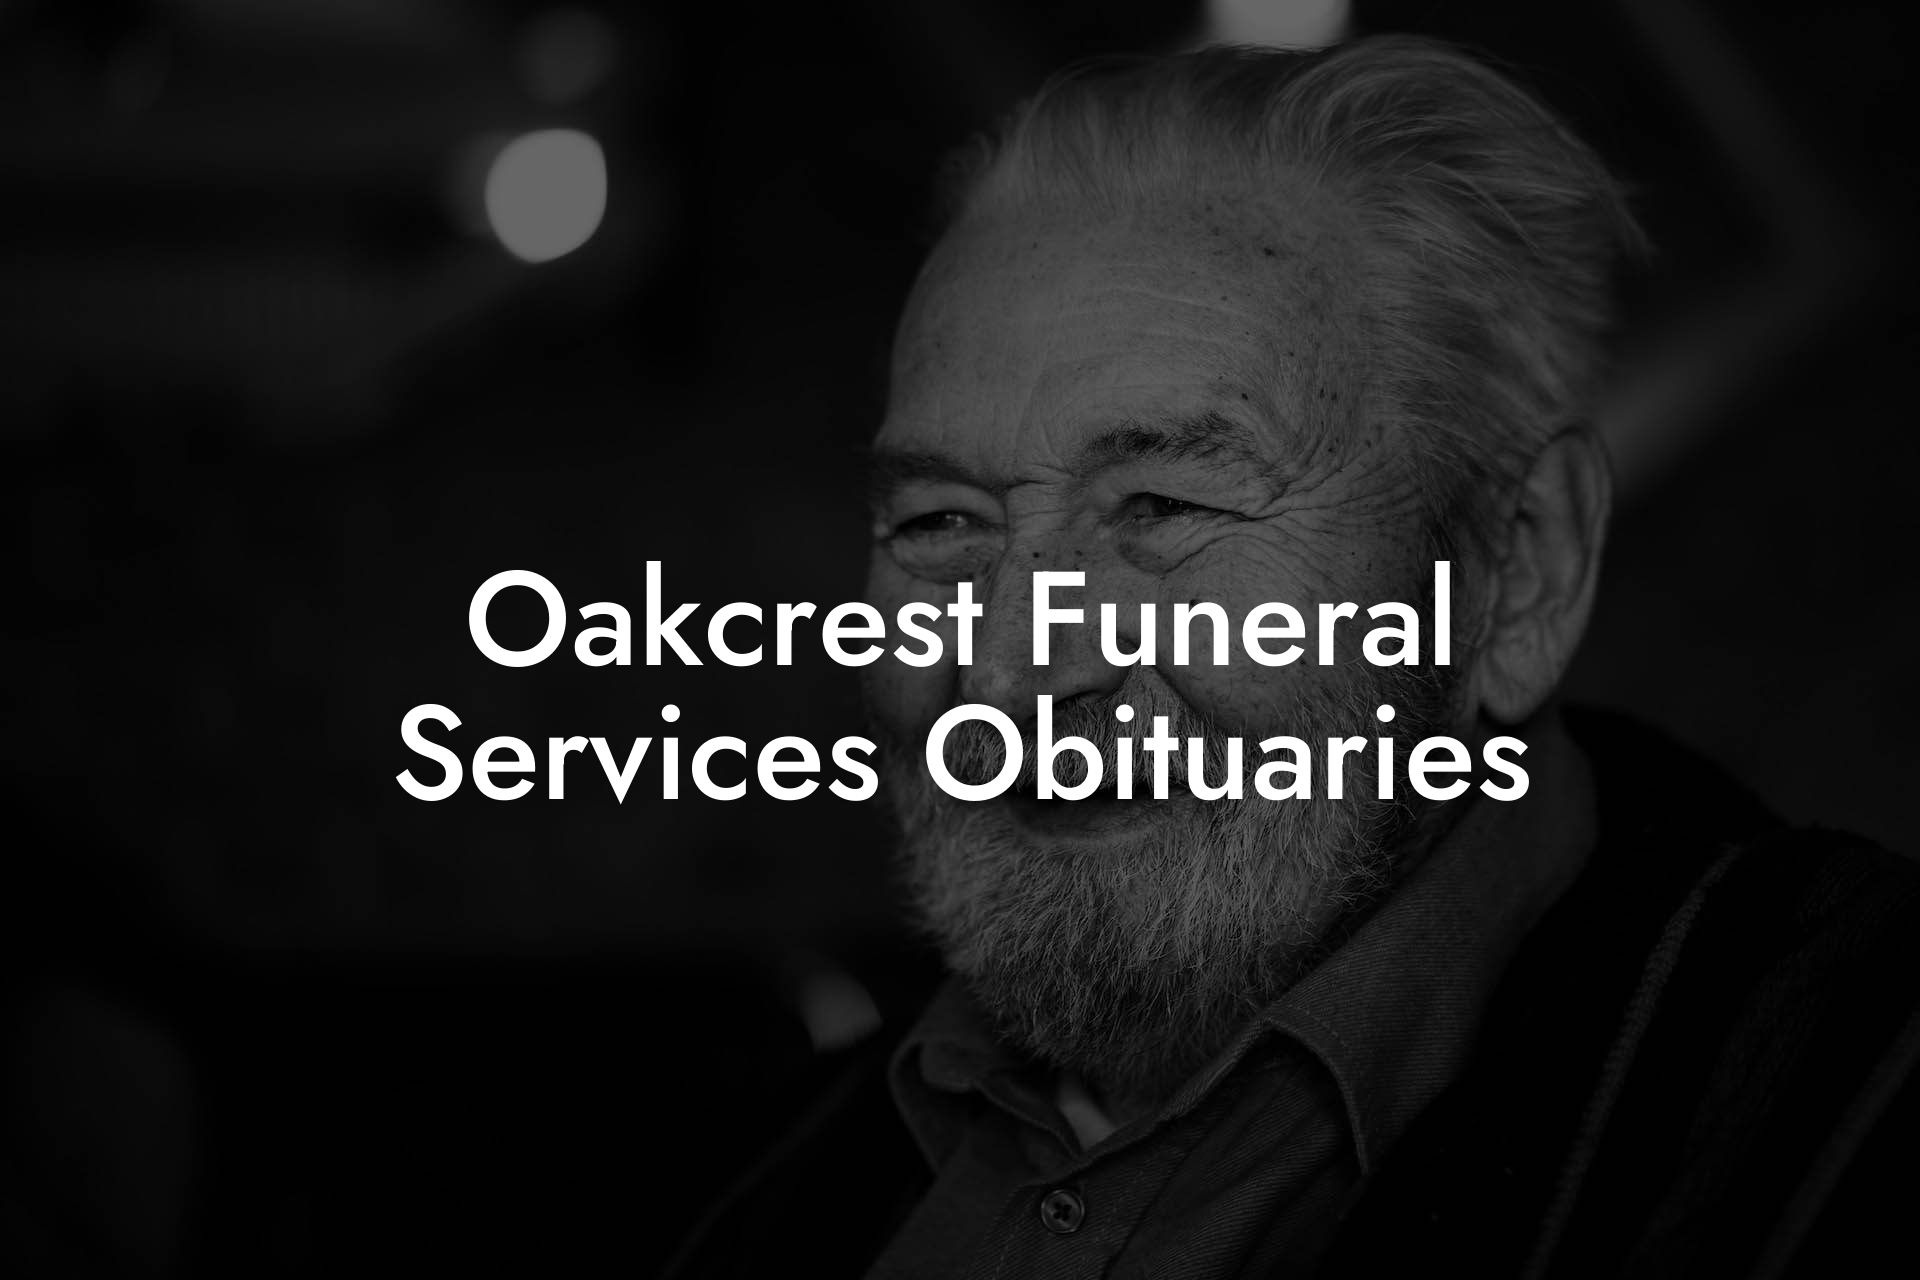 Oakcrest Funeral Services Obituaries